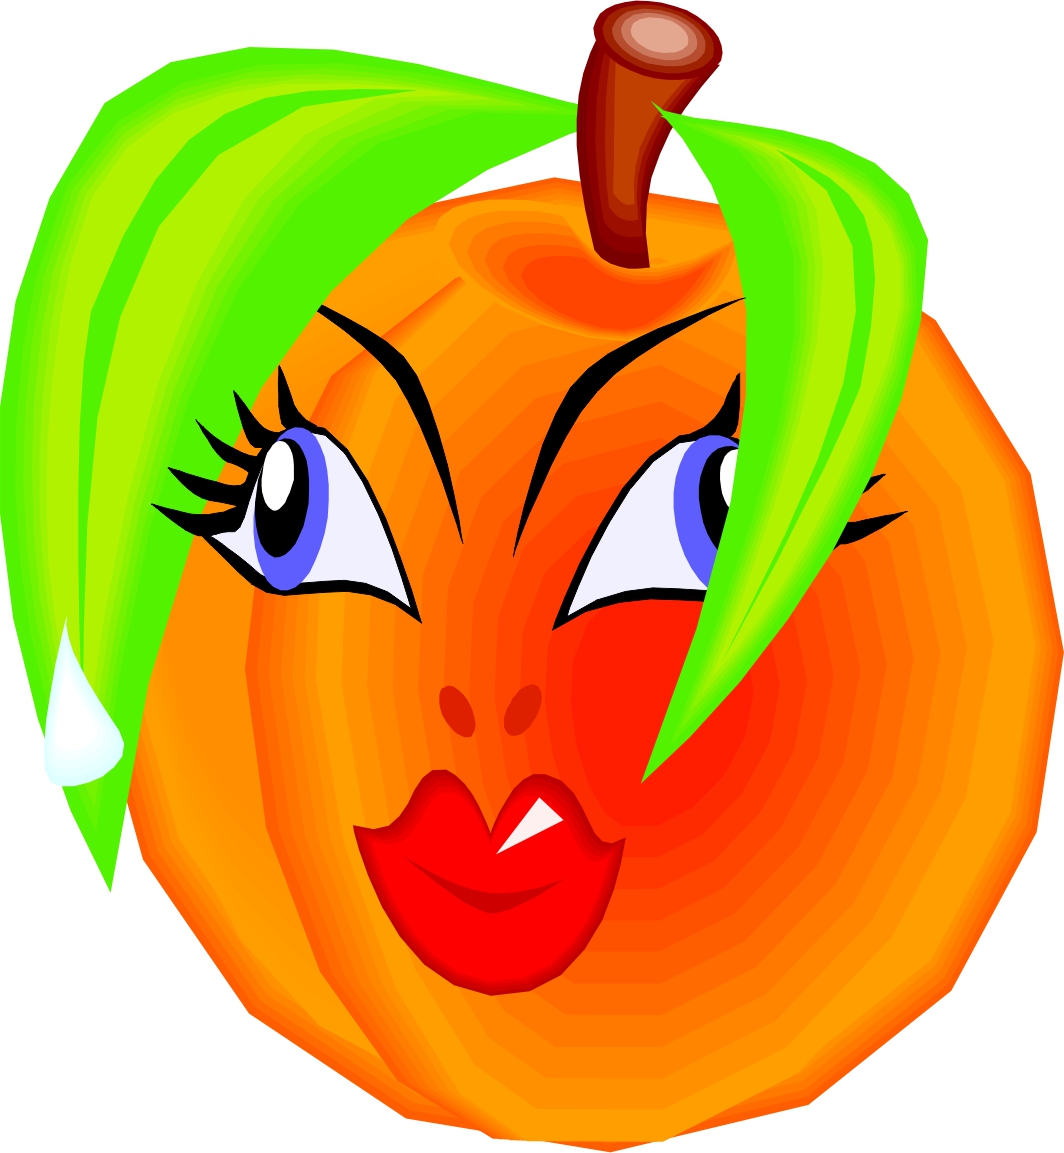 peaches clipart cartoon